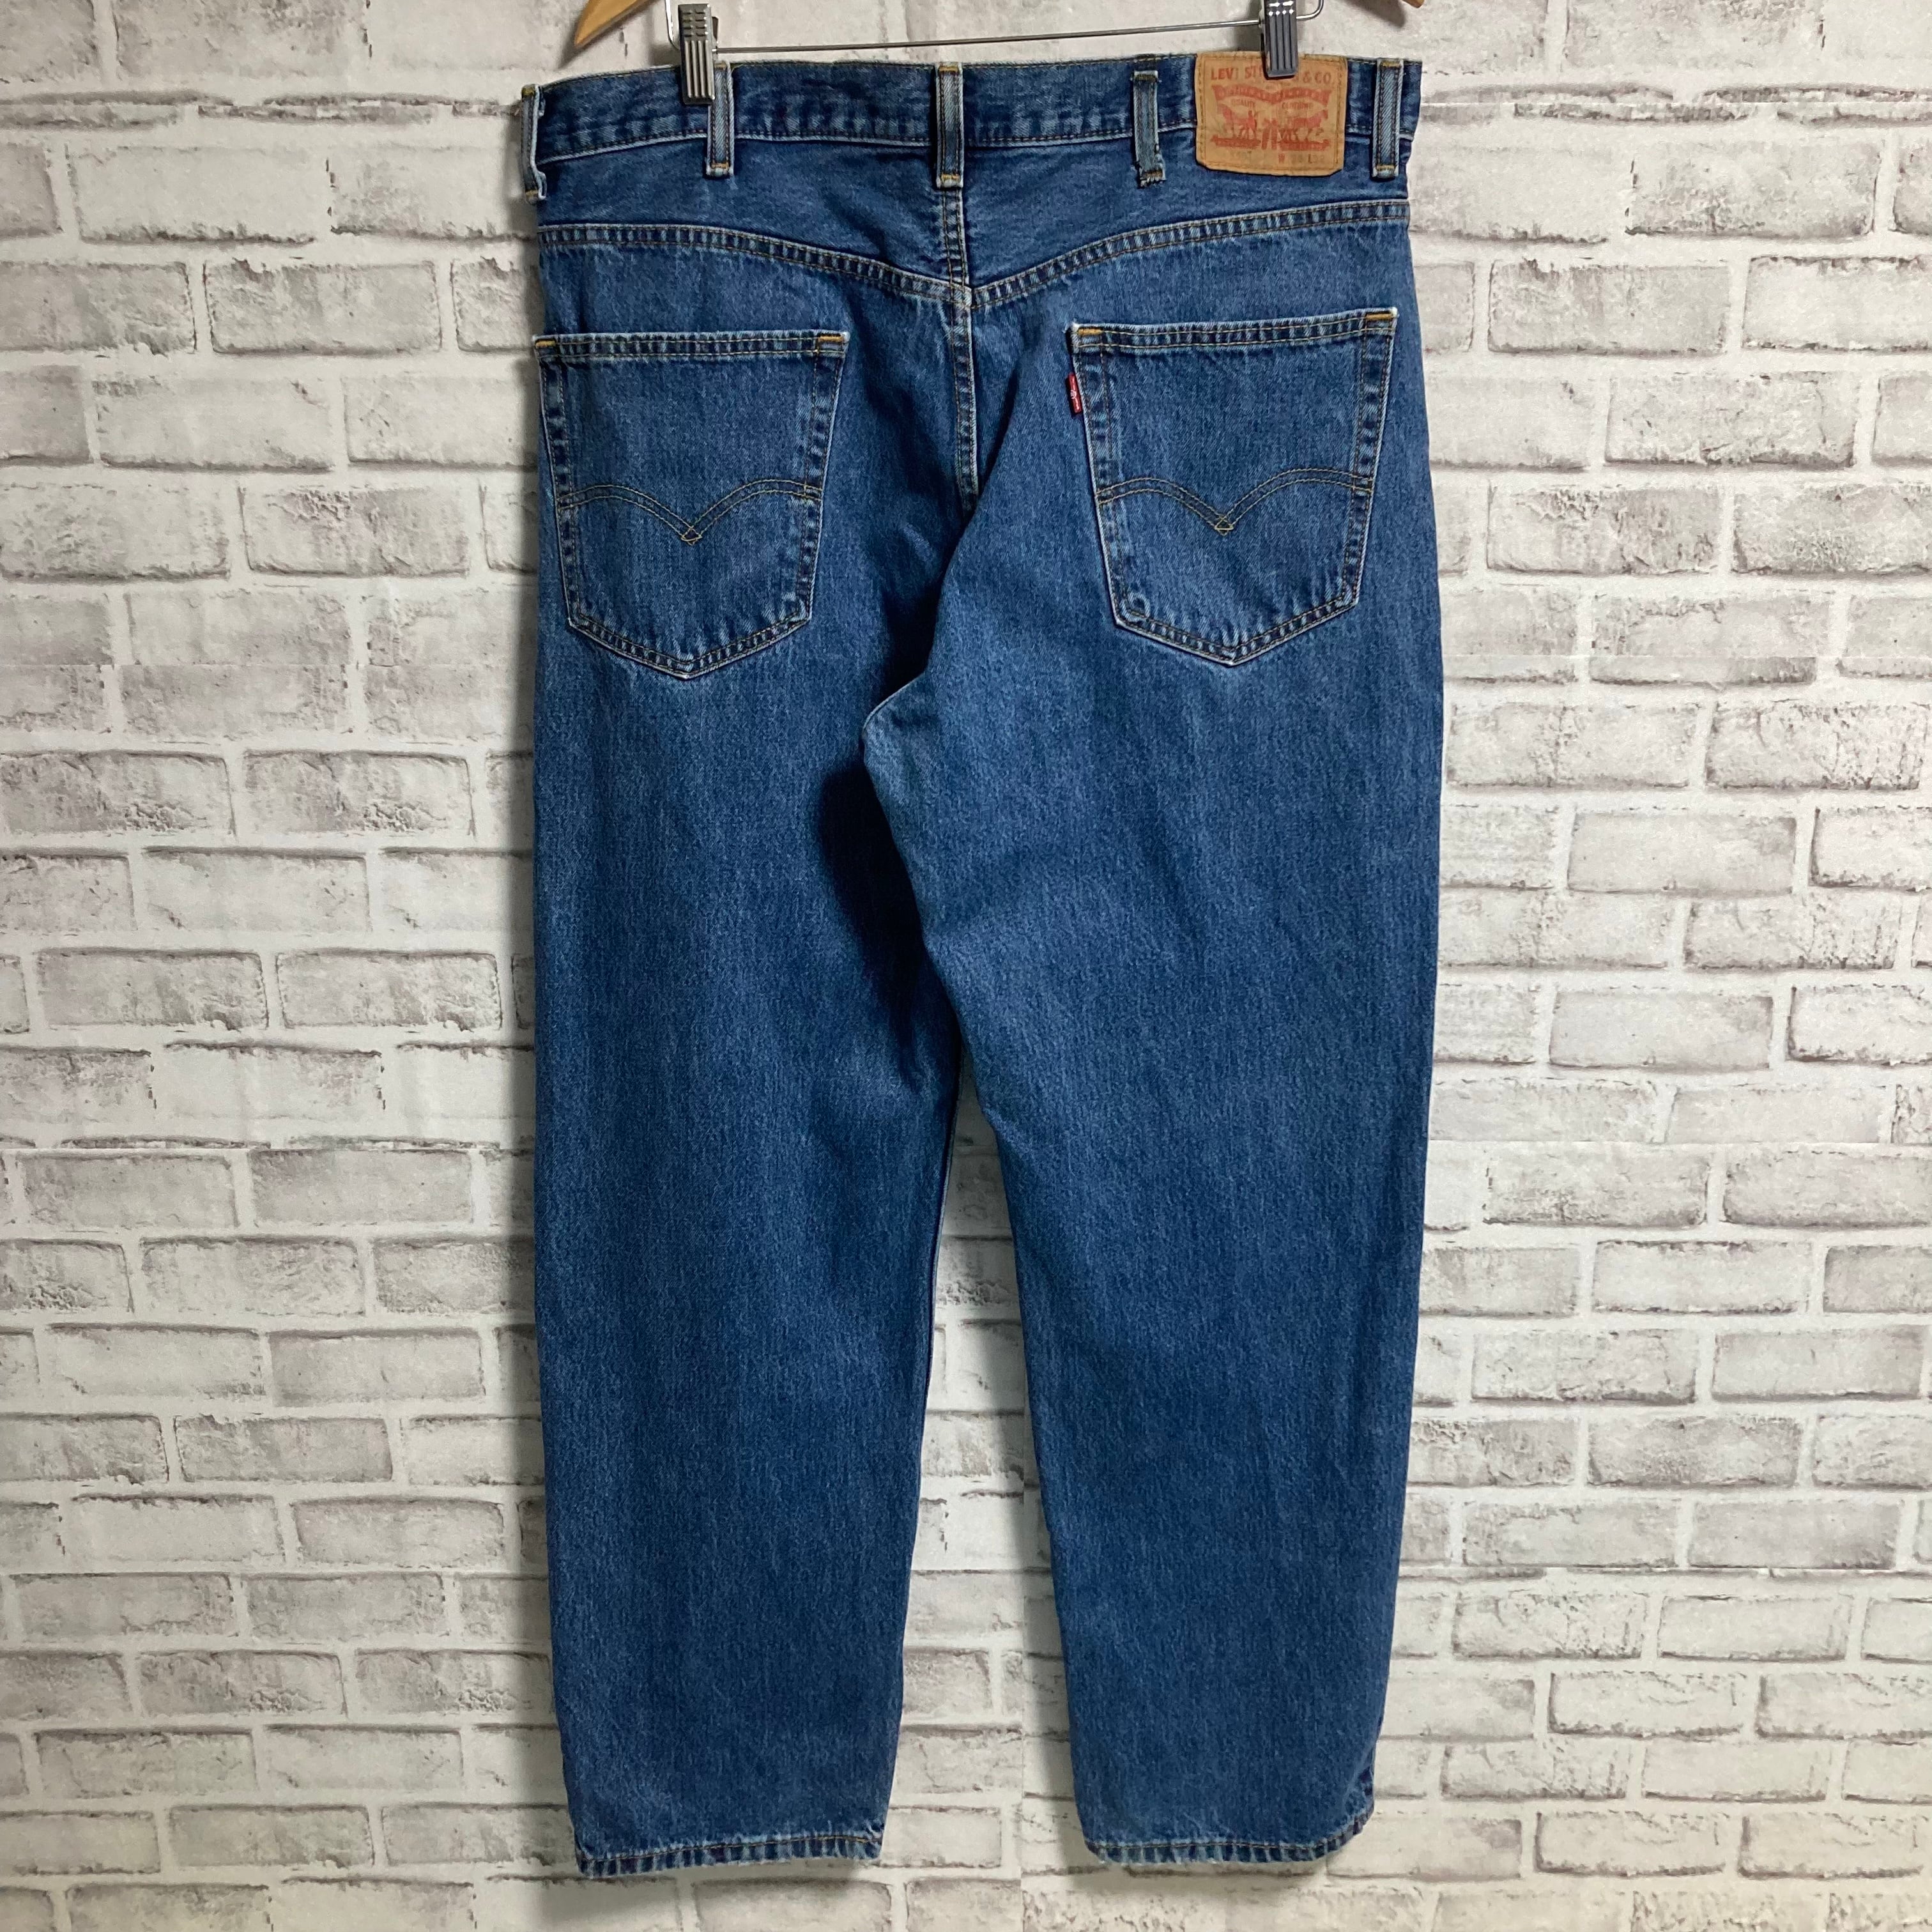 【Levi’s 550】W38×L32 Denim Jeans リーバイス 550 ブルーデニム ウォッシュデニム ジーンズ ジーパン  リラックスフィット テーパード アメリカ USA 古着